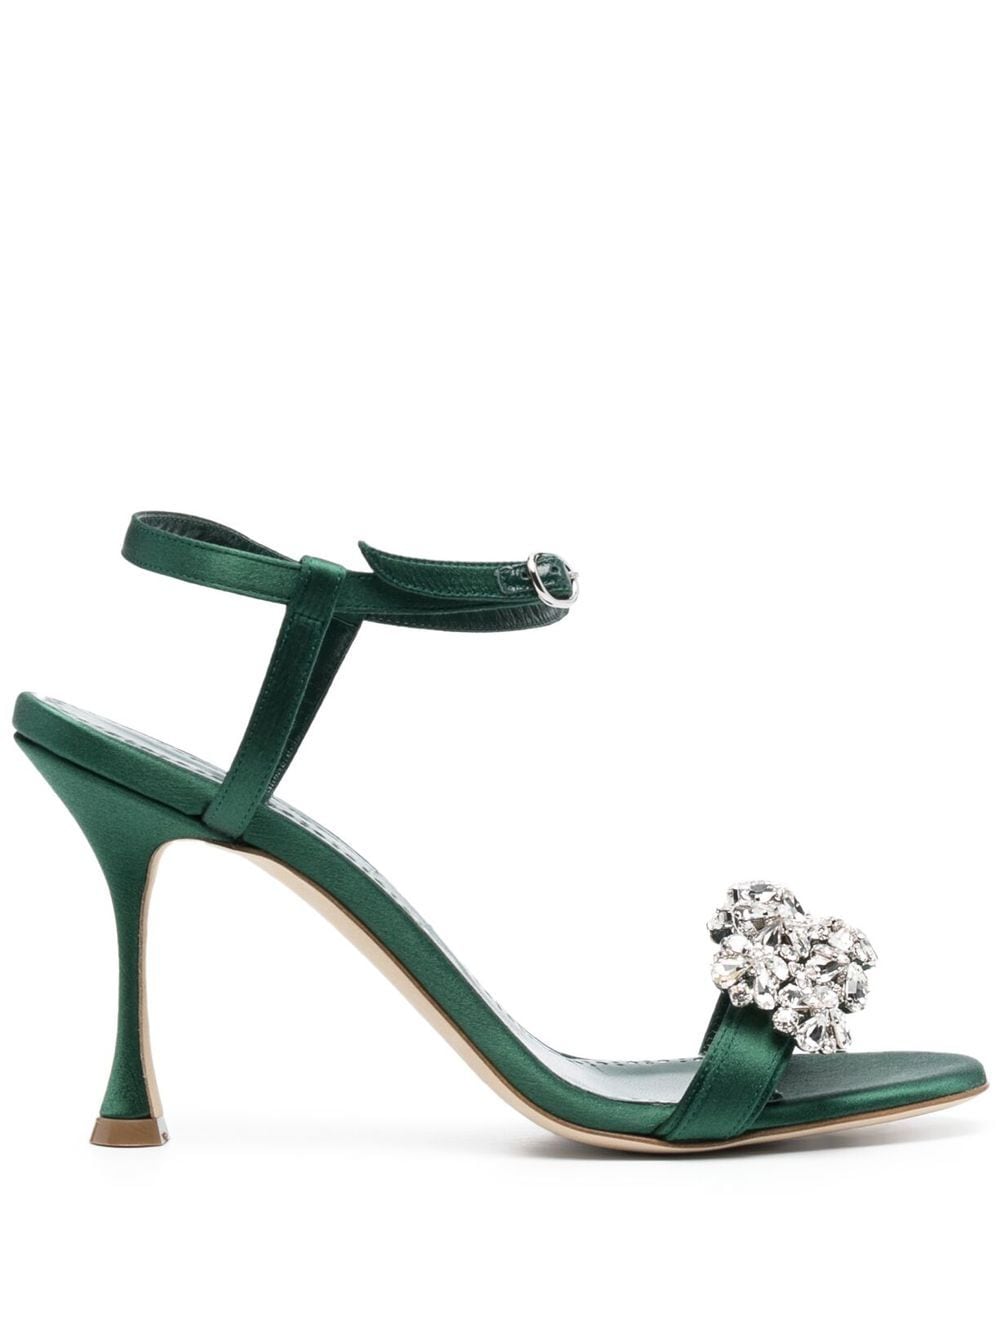 Manolo Blahnik crystal-embellished sandals - Green von Manolo Blahnik